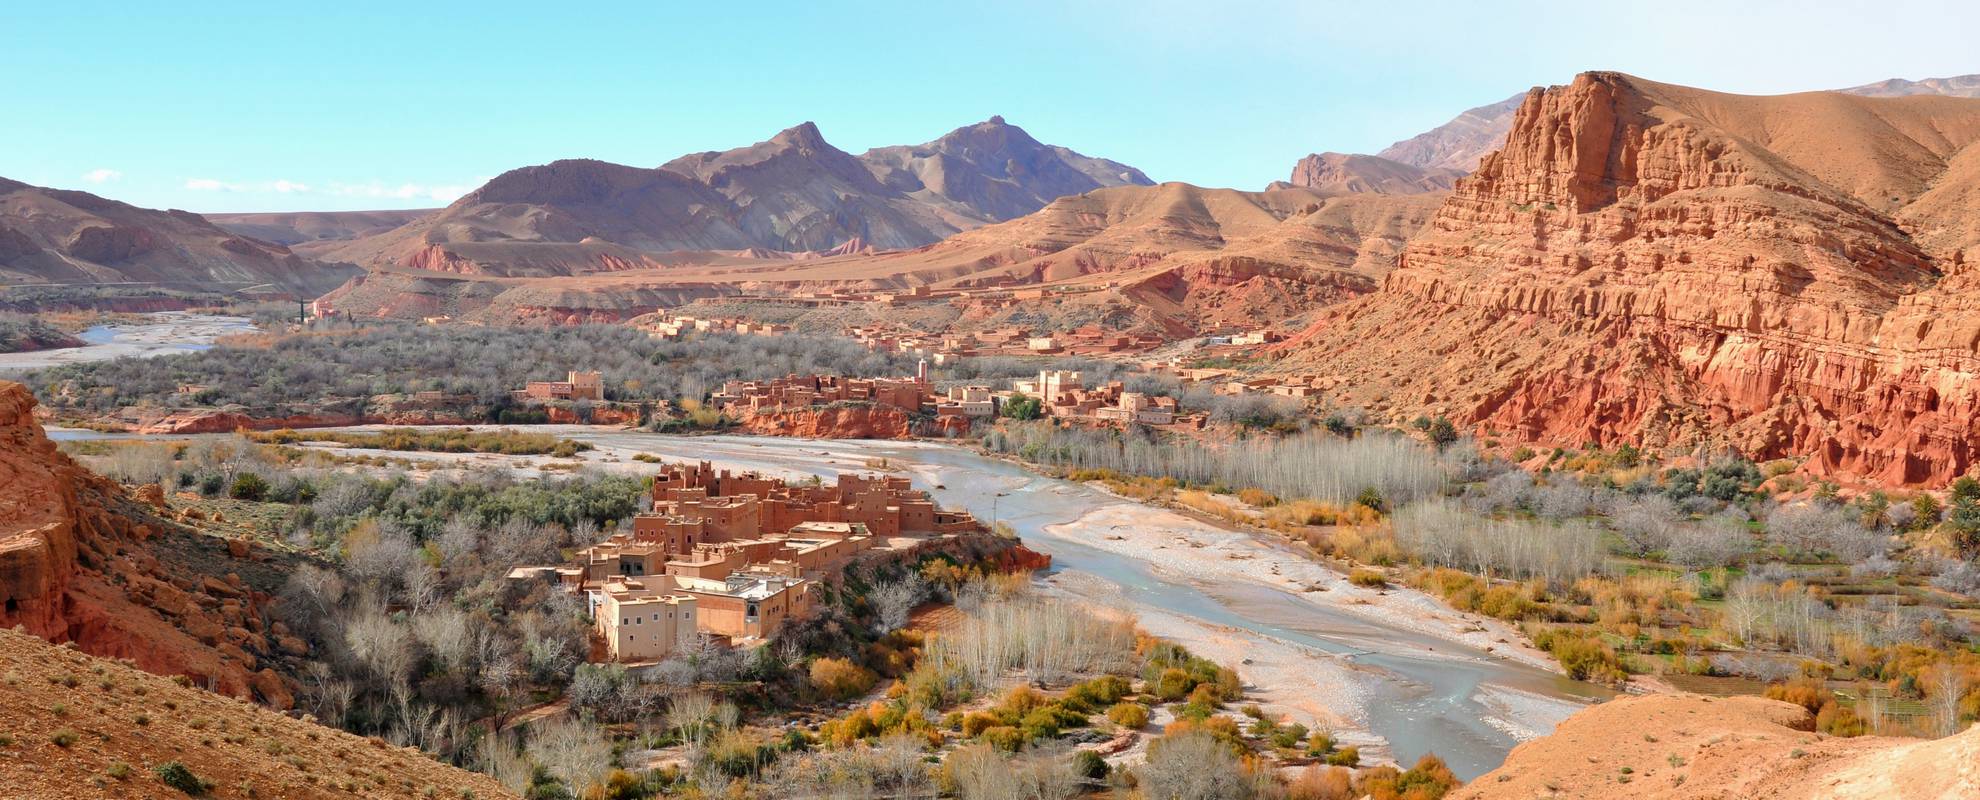 Vandring bland berberbyar i Rose Valley